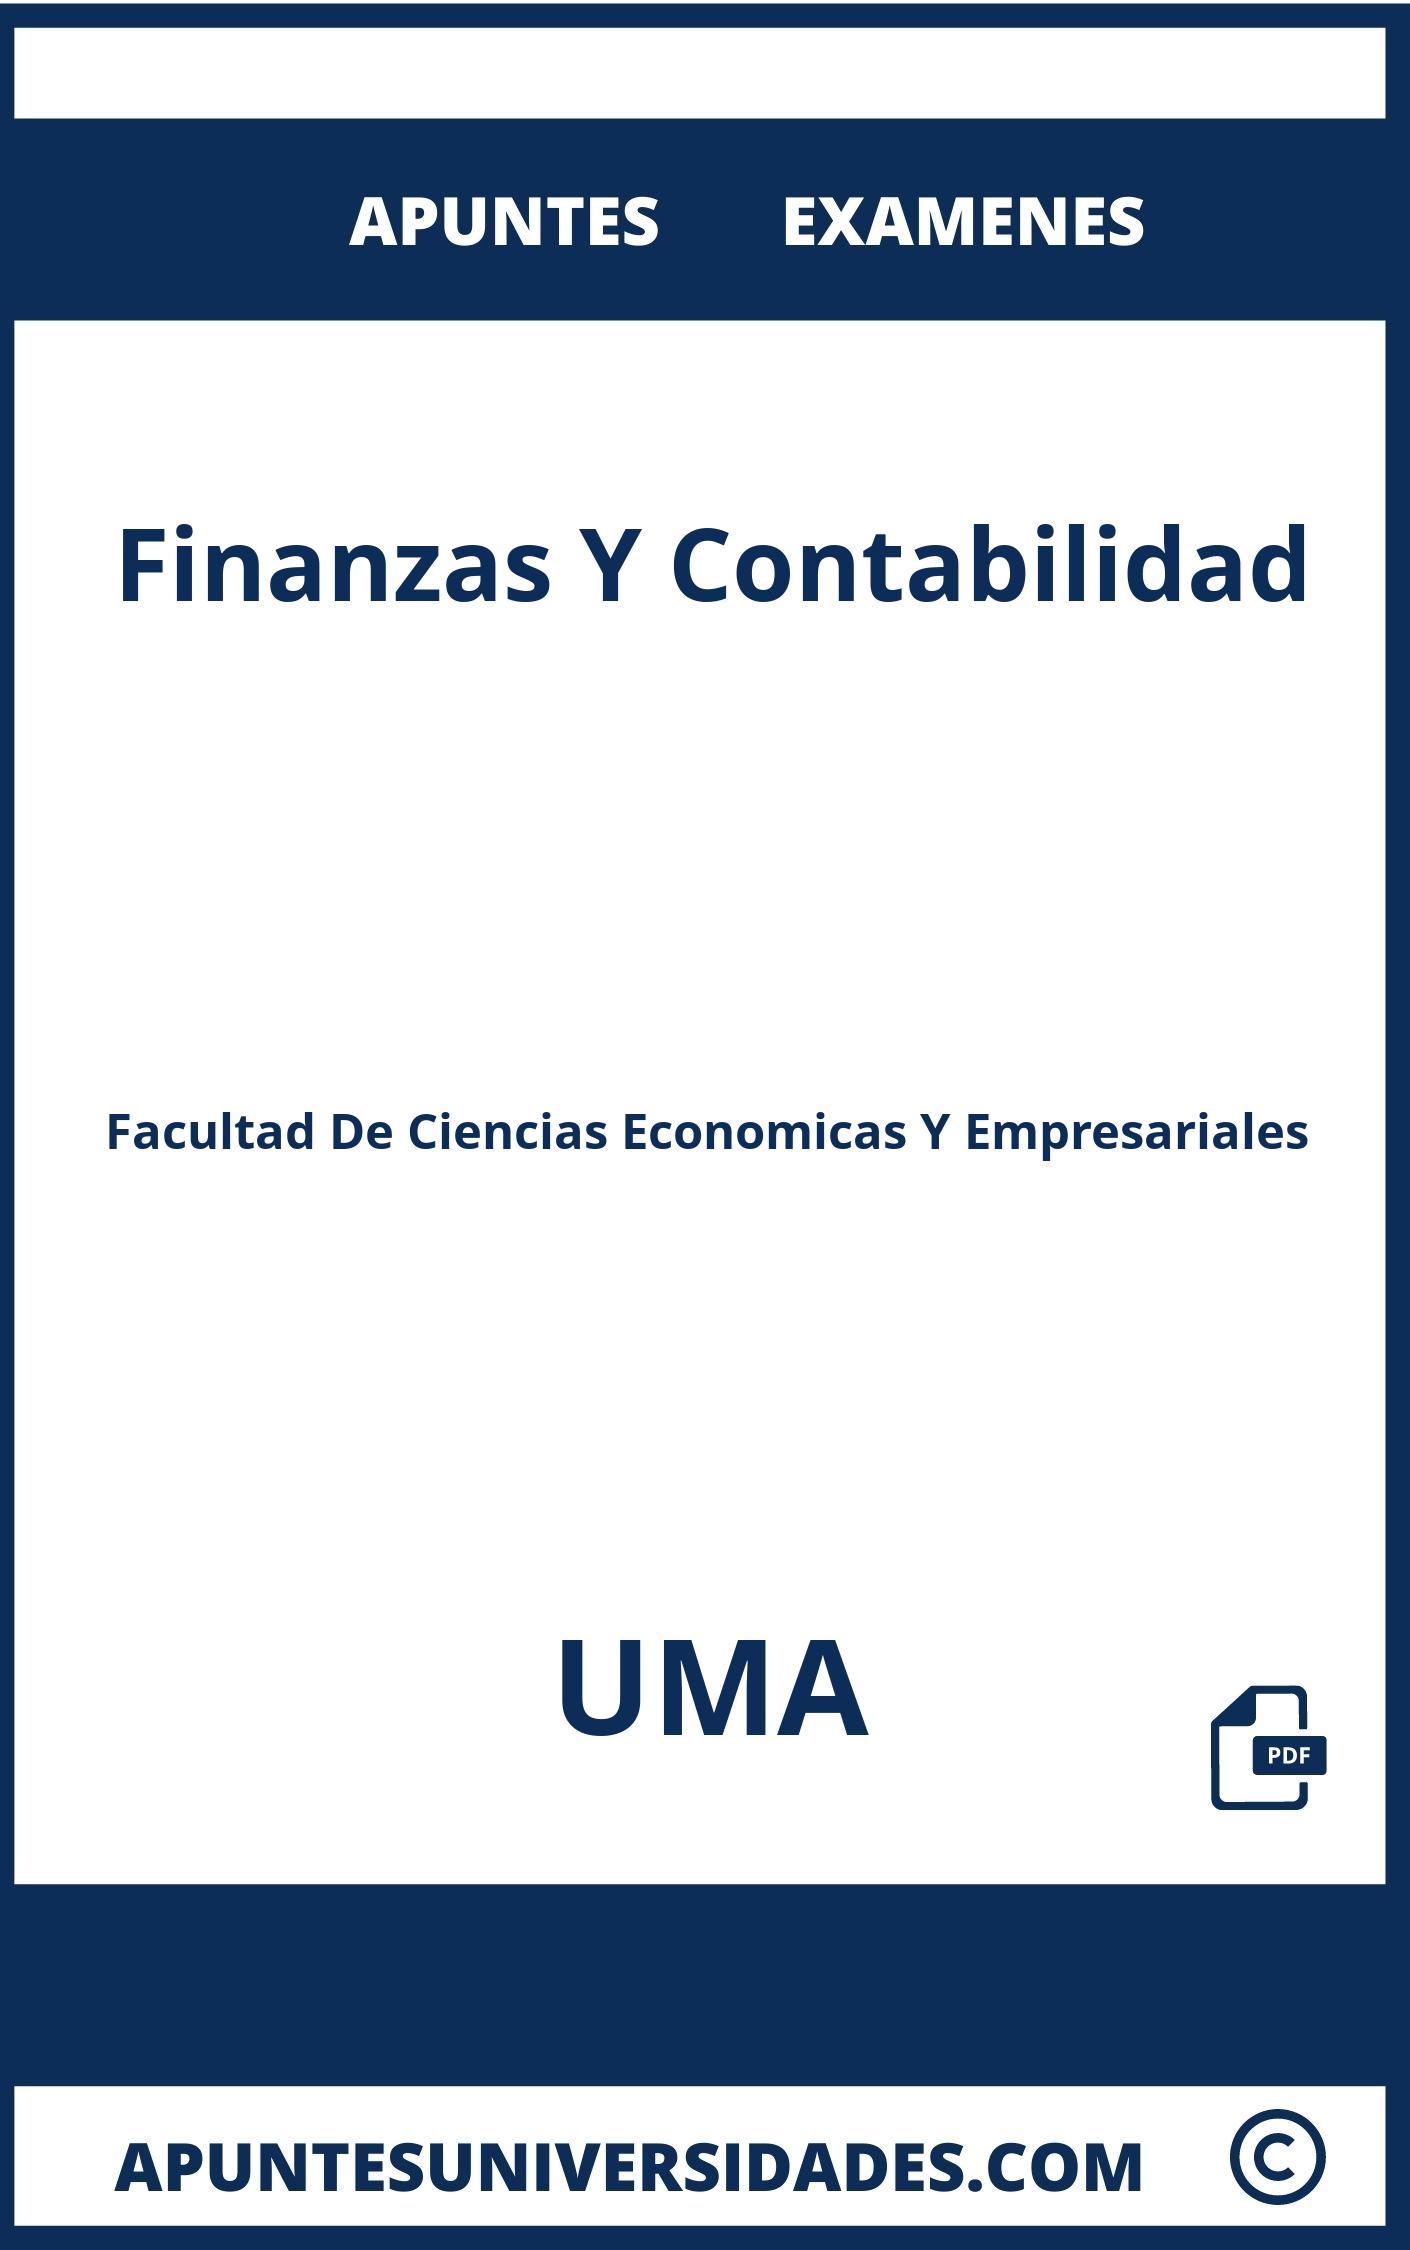 Examenes Finanzas Y Contabilidad UMA y Apuntes